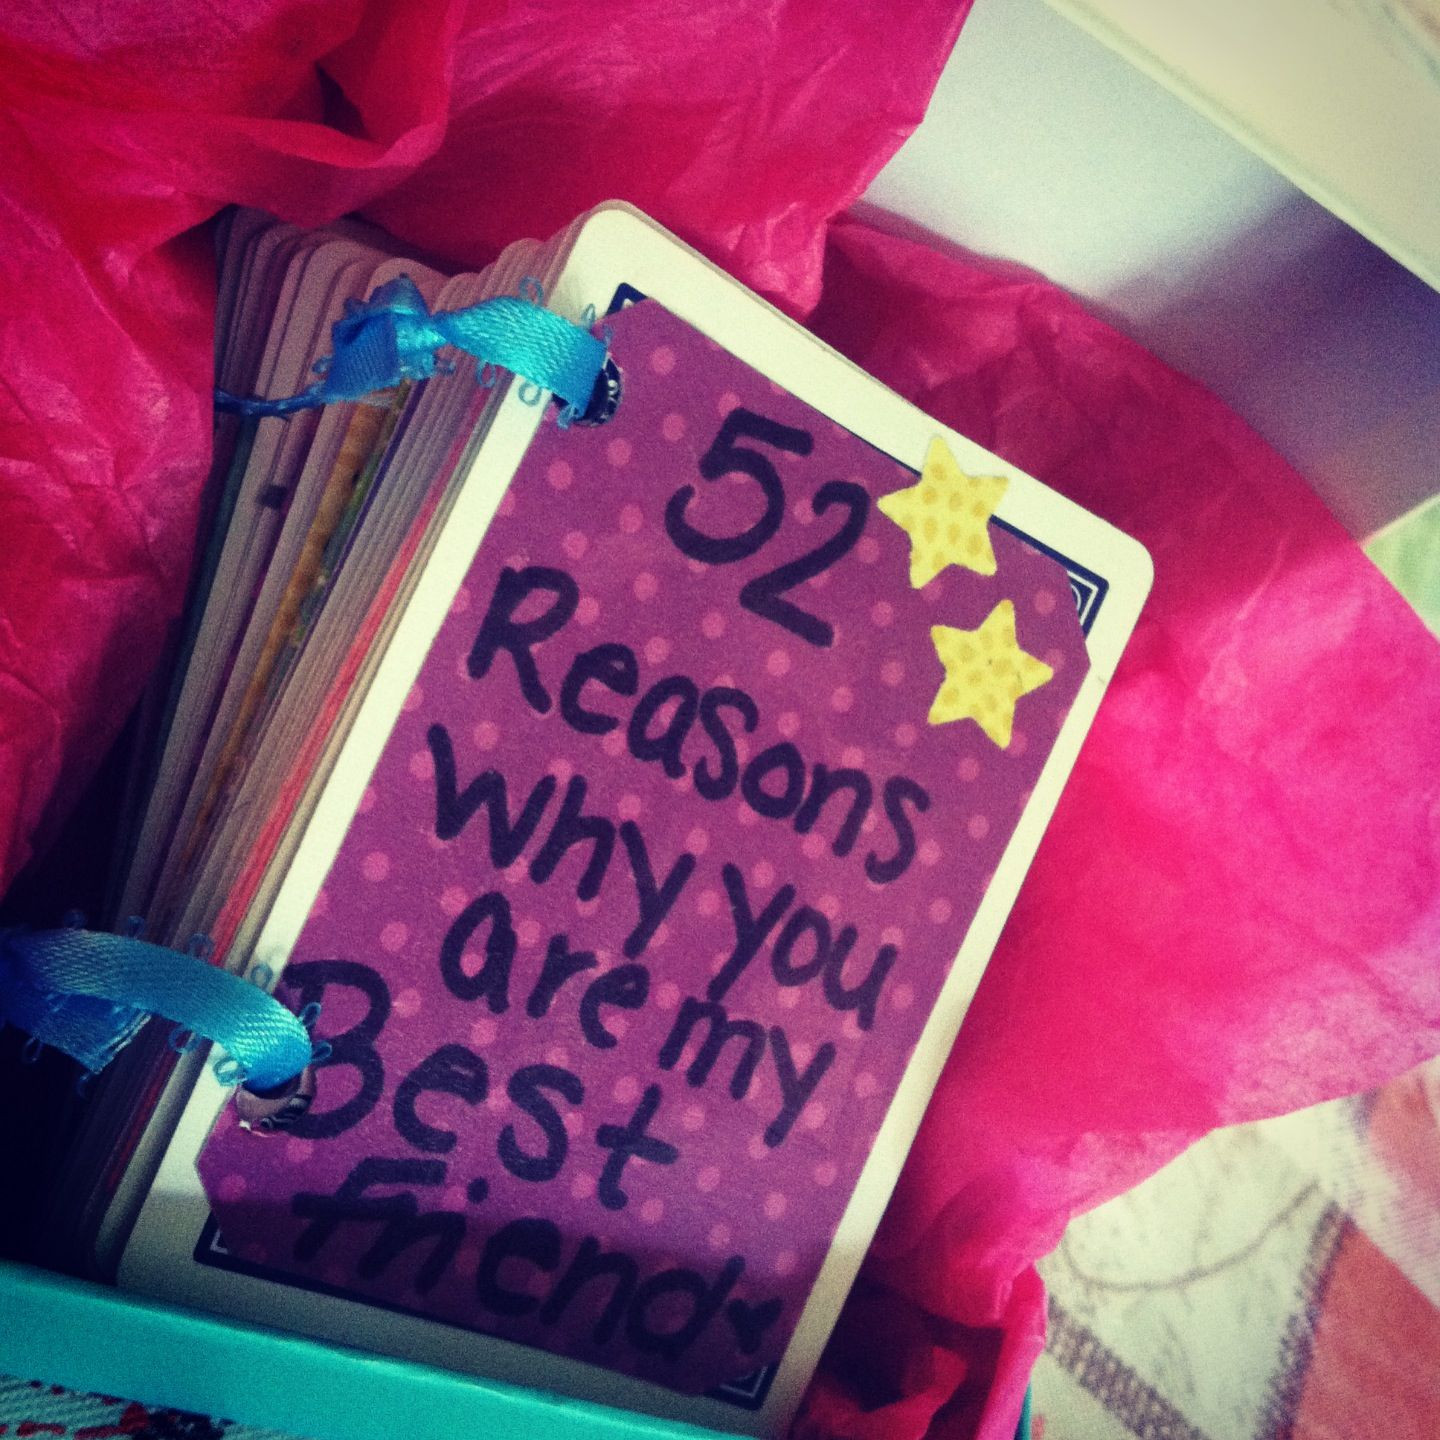 DIY Bestfriend Gifts
 The 25 best Bff ts ideas on Pinterest